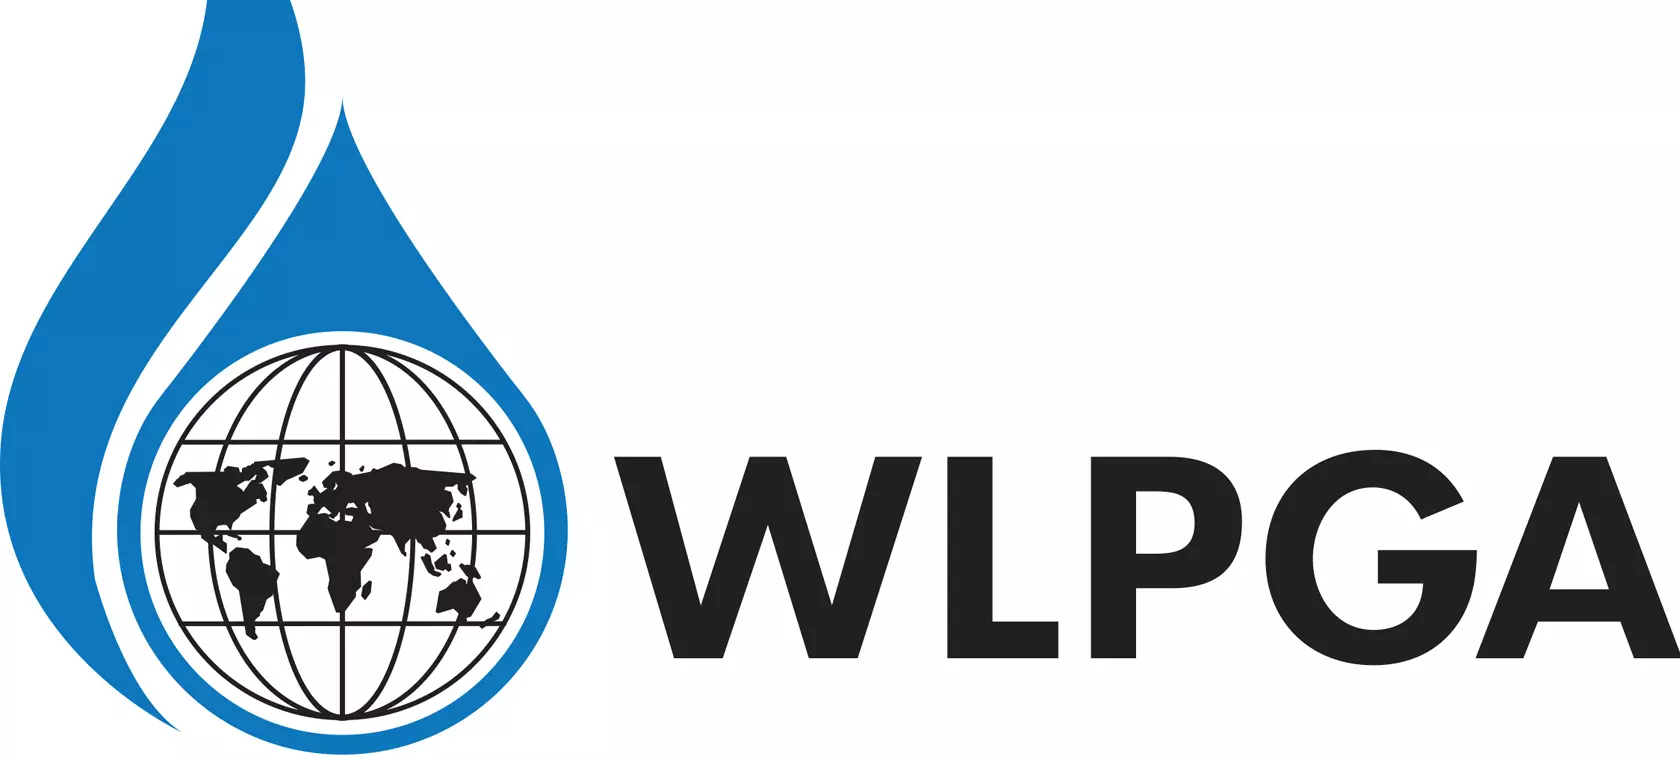 WLPGA's new logo - evolution not revolution